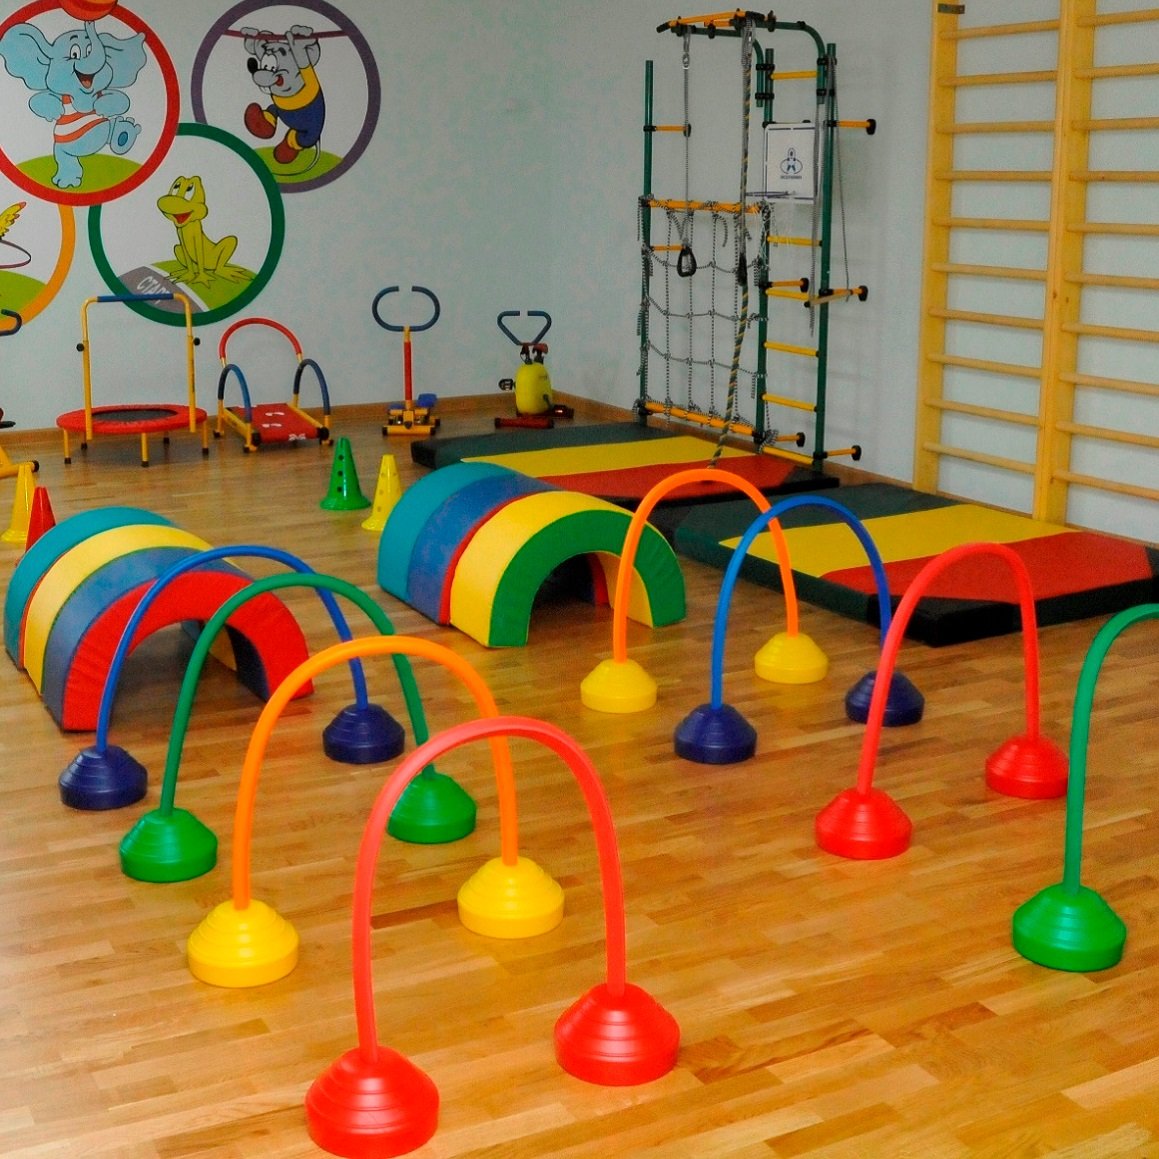 Оборудование спортивного зала в детском саду - Статьи